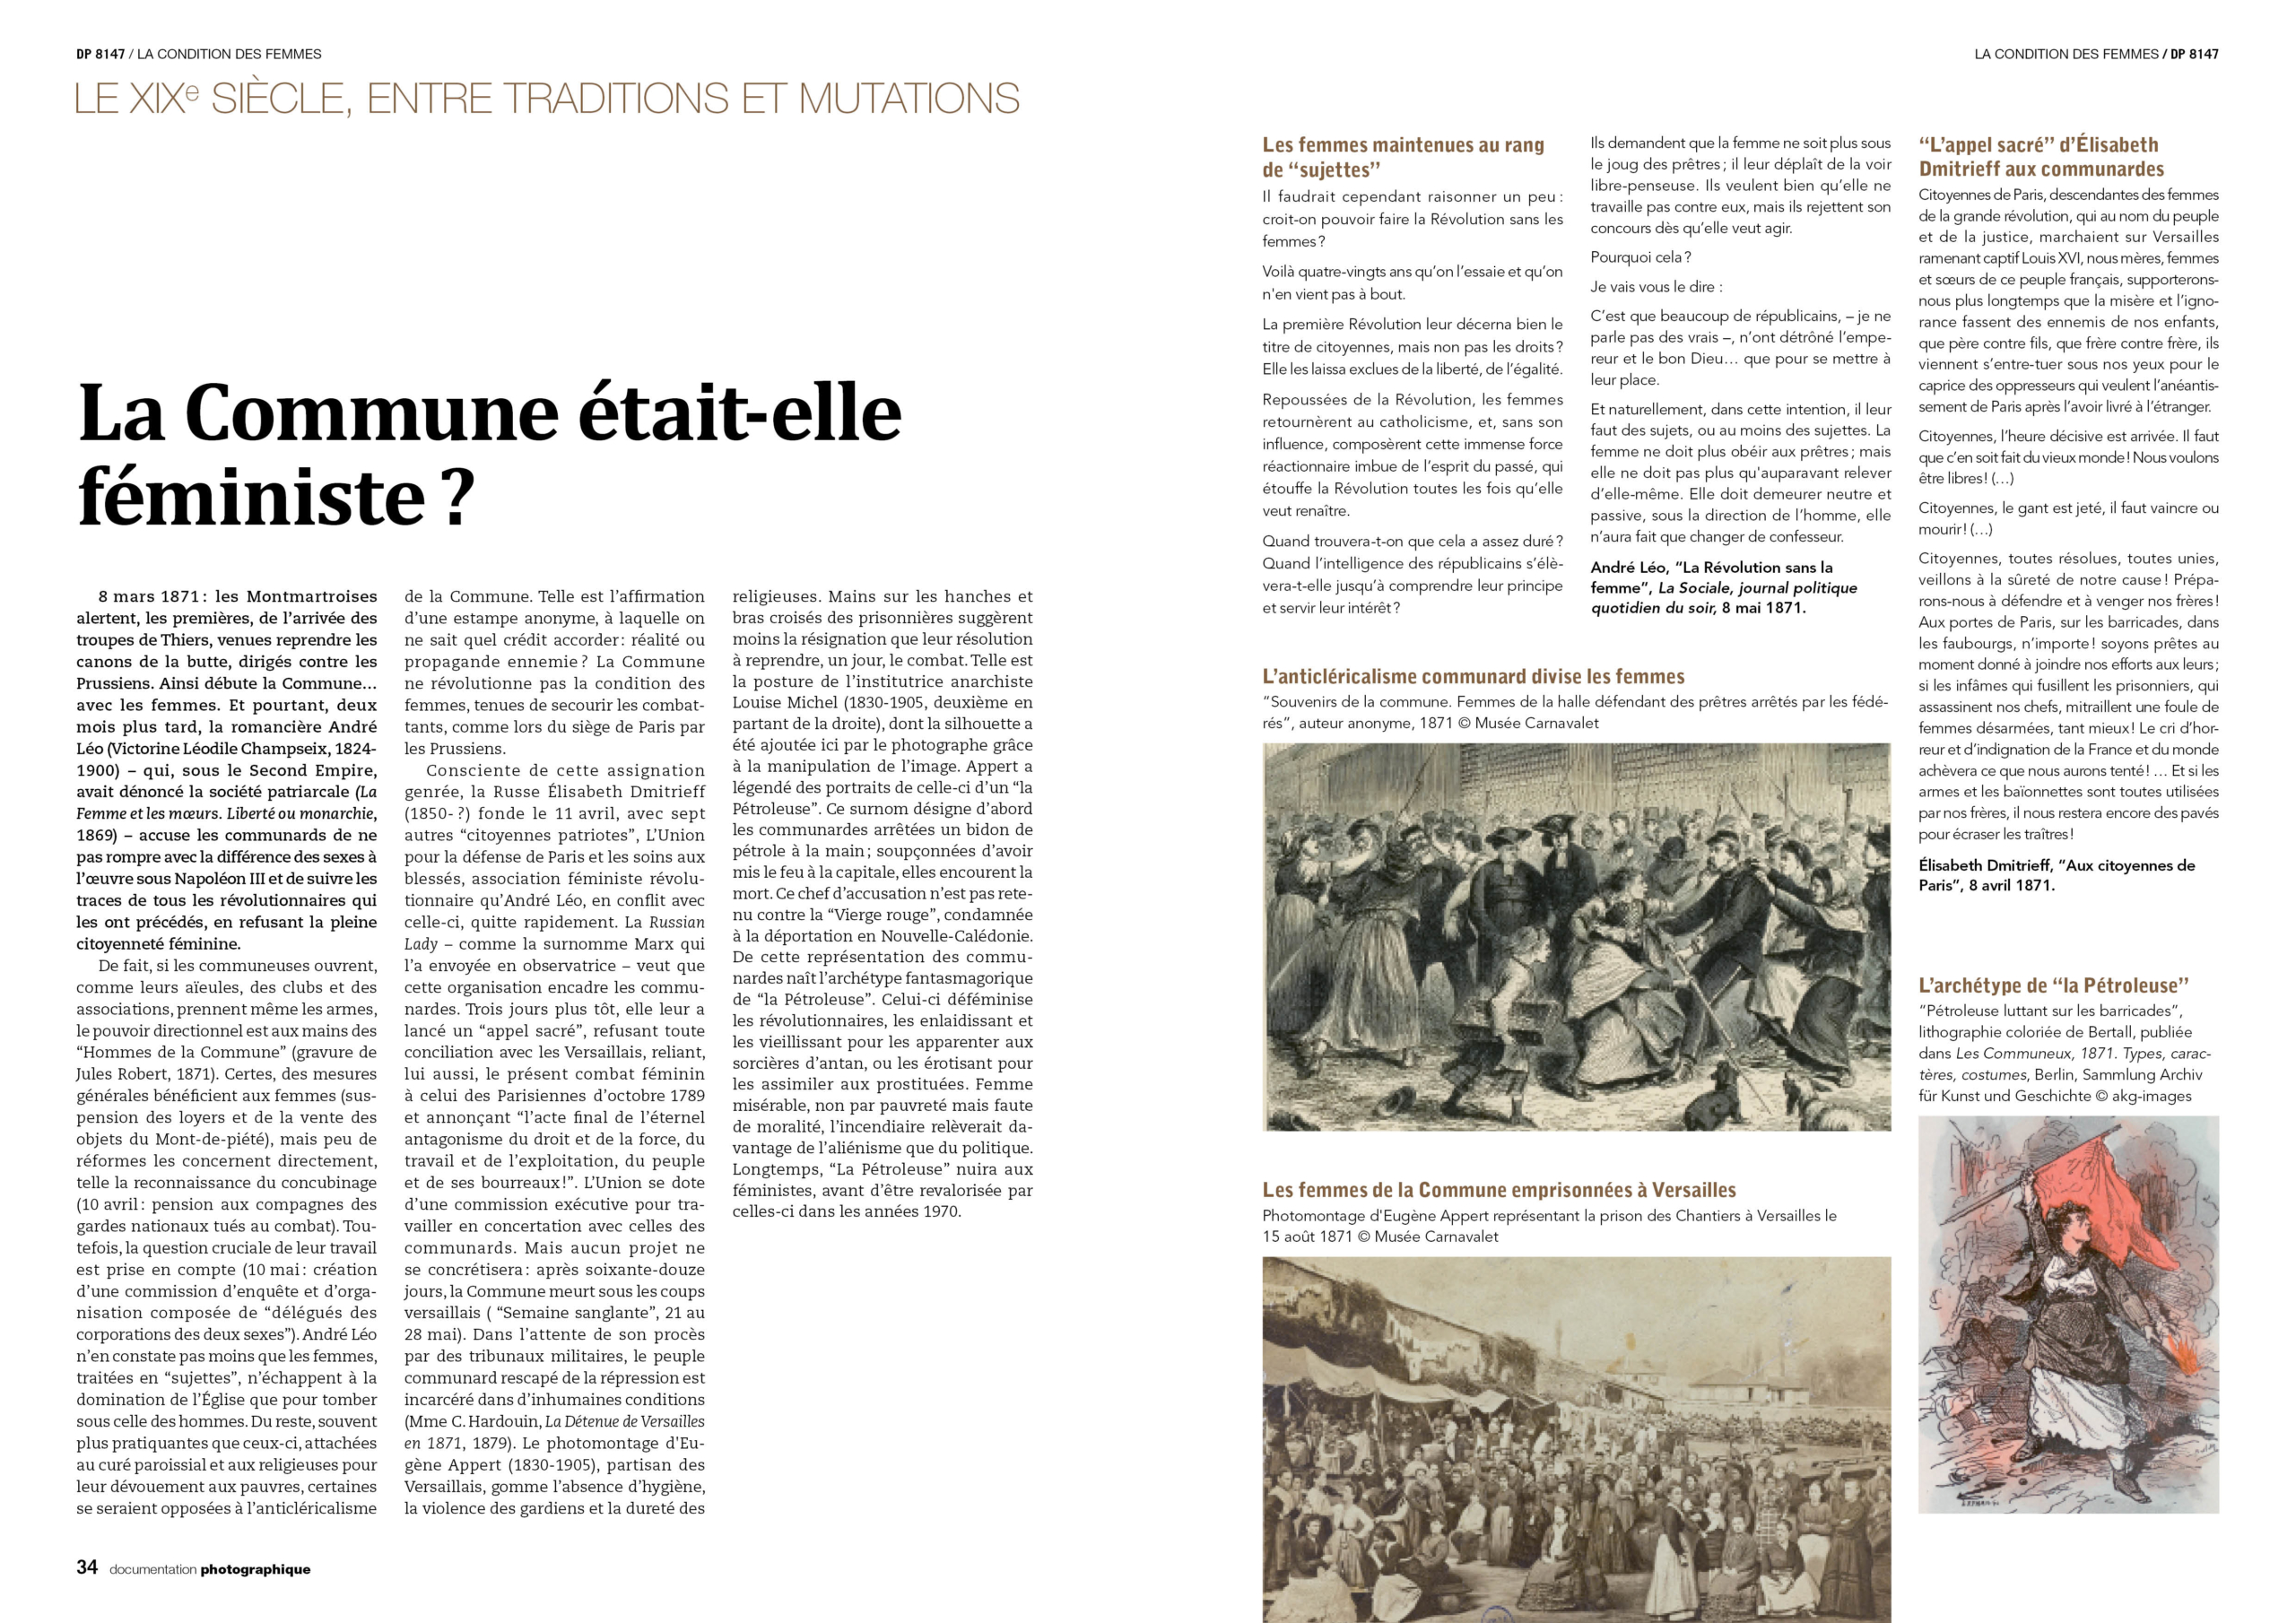 "La Commune était-elle féministe ?" pp. 34-35